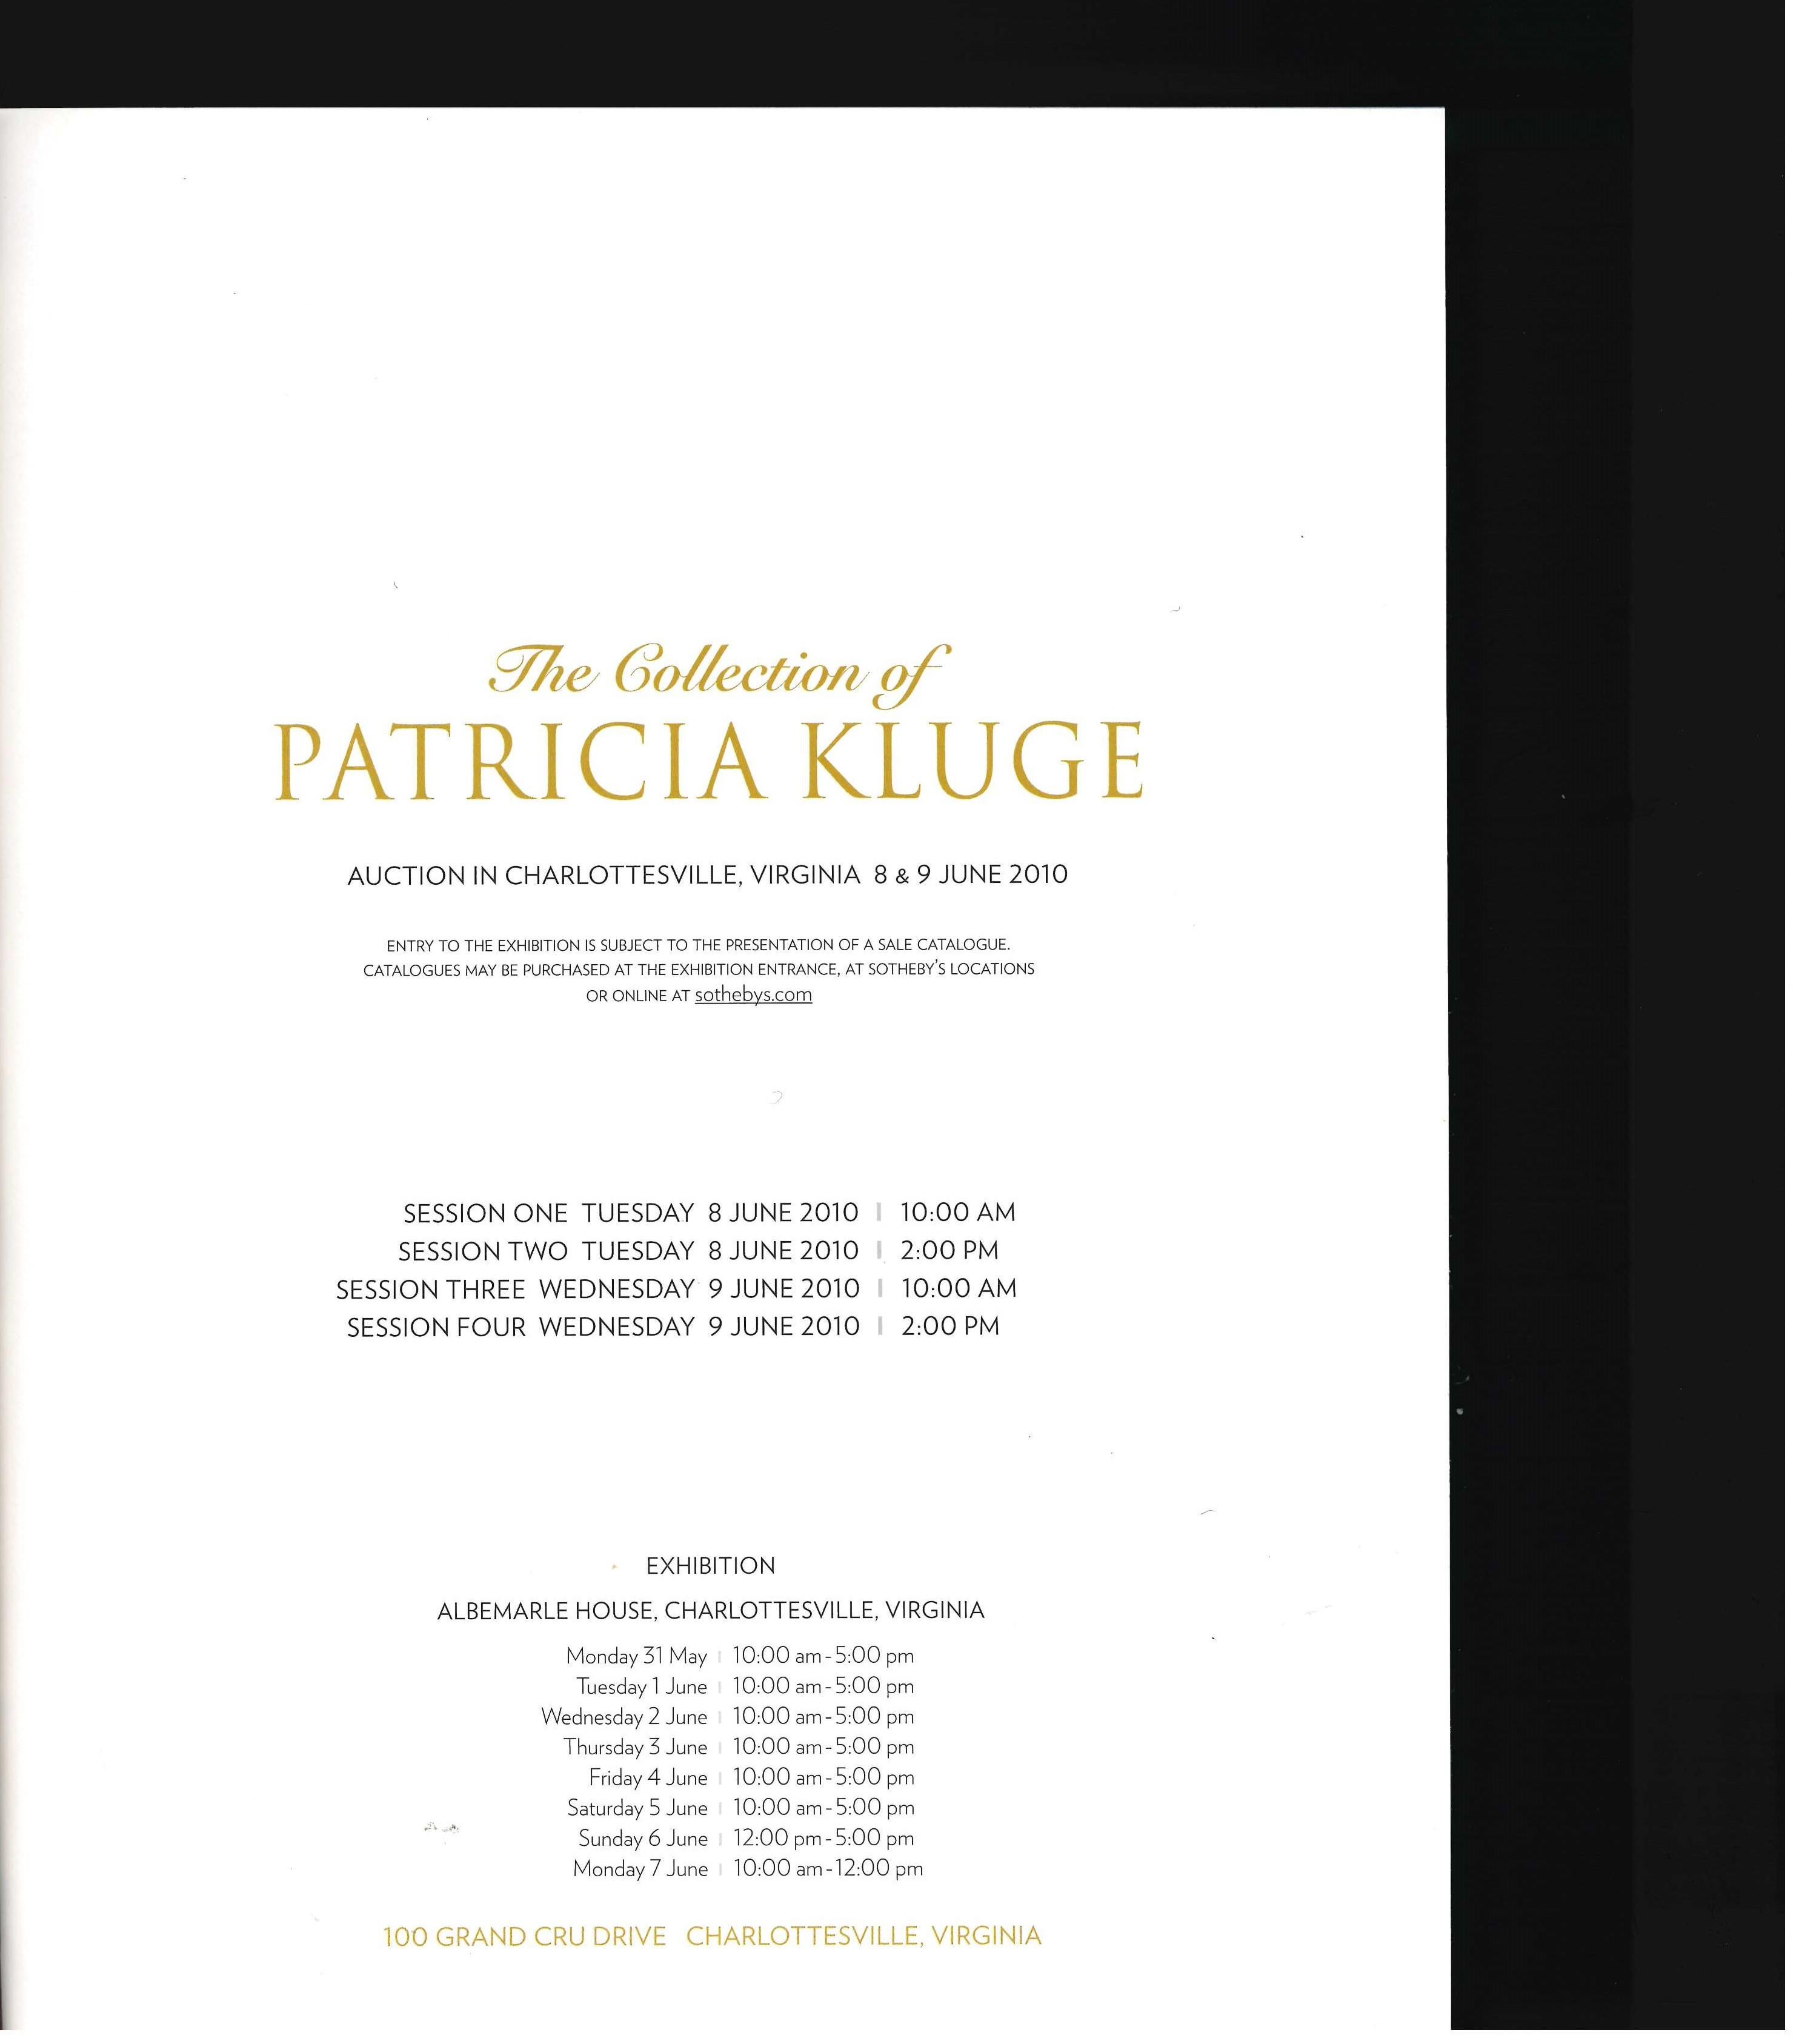 Il s'agit du catalogue de Sotheby's produit pour la vente de la collection de Patricia Kluge d'Albemarle House, Charlottesville, Virginie - qui a eu lieu les 8 et 9 juin 2010. Elle comprend le mobilier et l'ameublement, les antiquités, les peintures